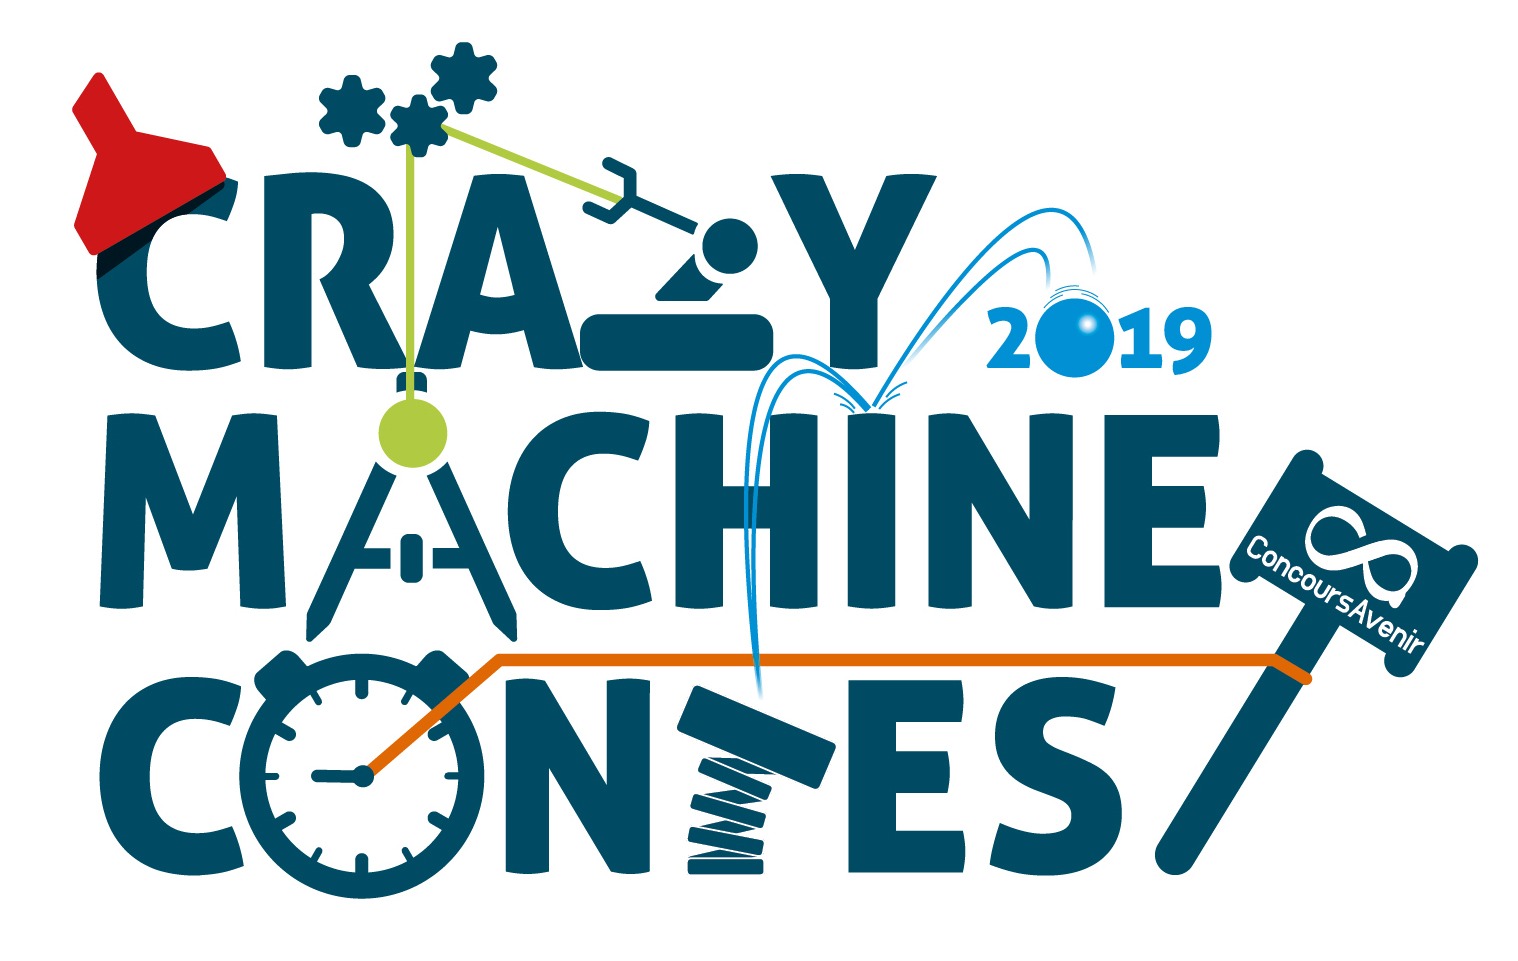 Crazy Machine Contest du Concours Avenir : l’EIGSI en compétition